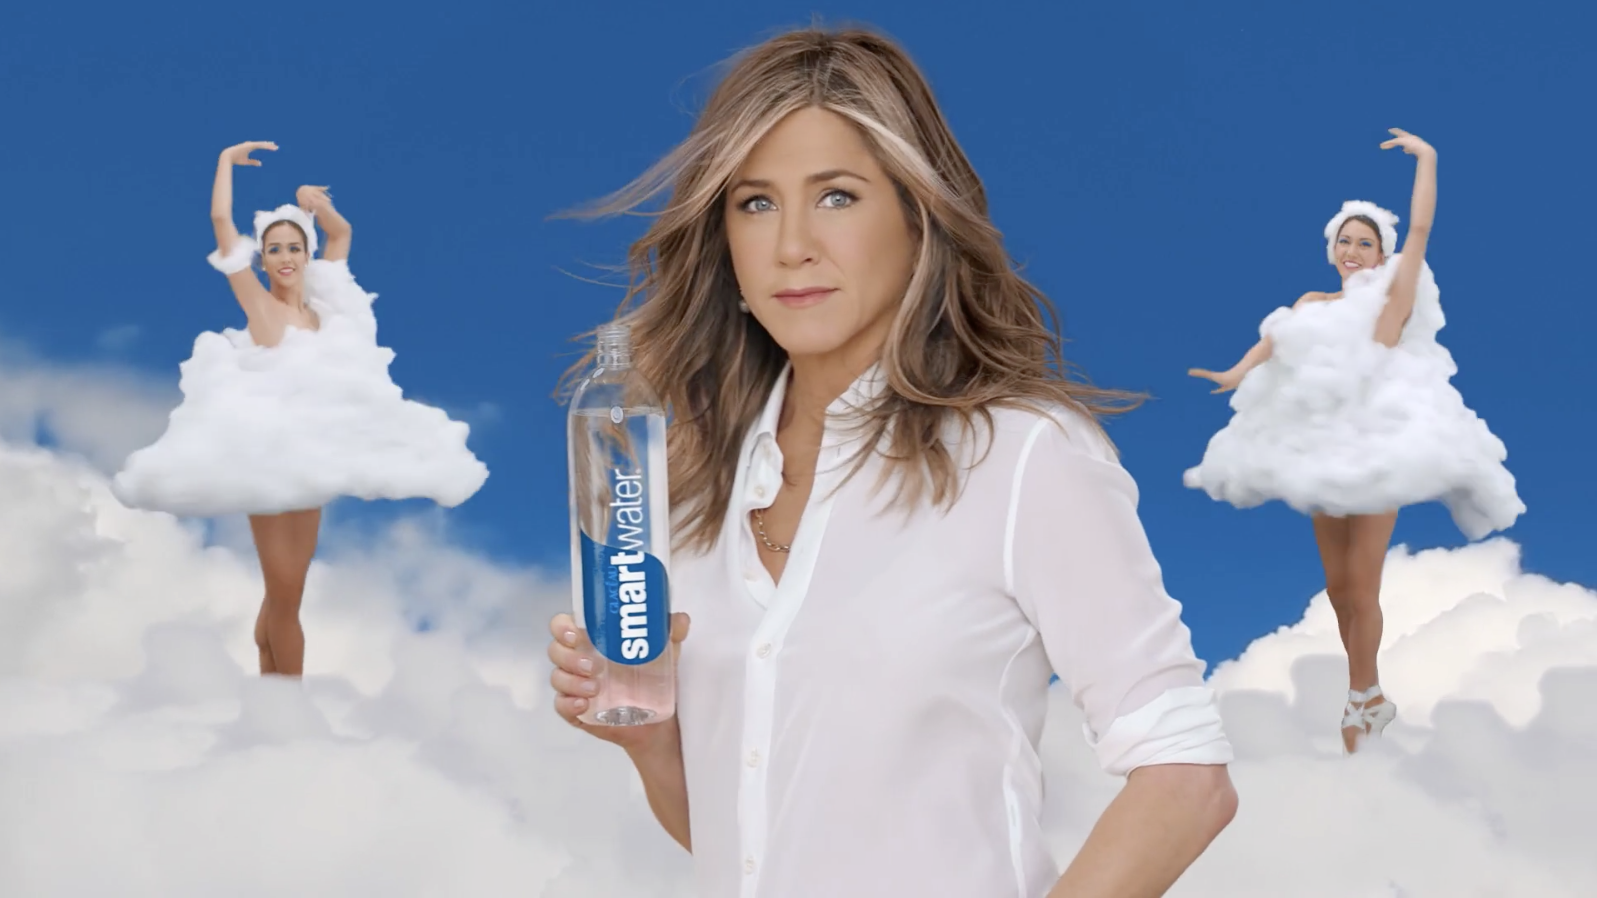 Ozon девушка. Женский образ в рекламе. Реклама воды.